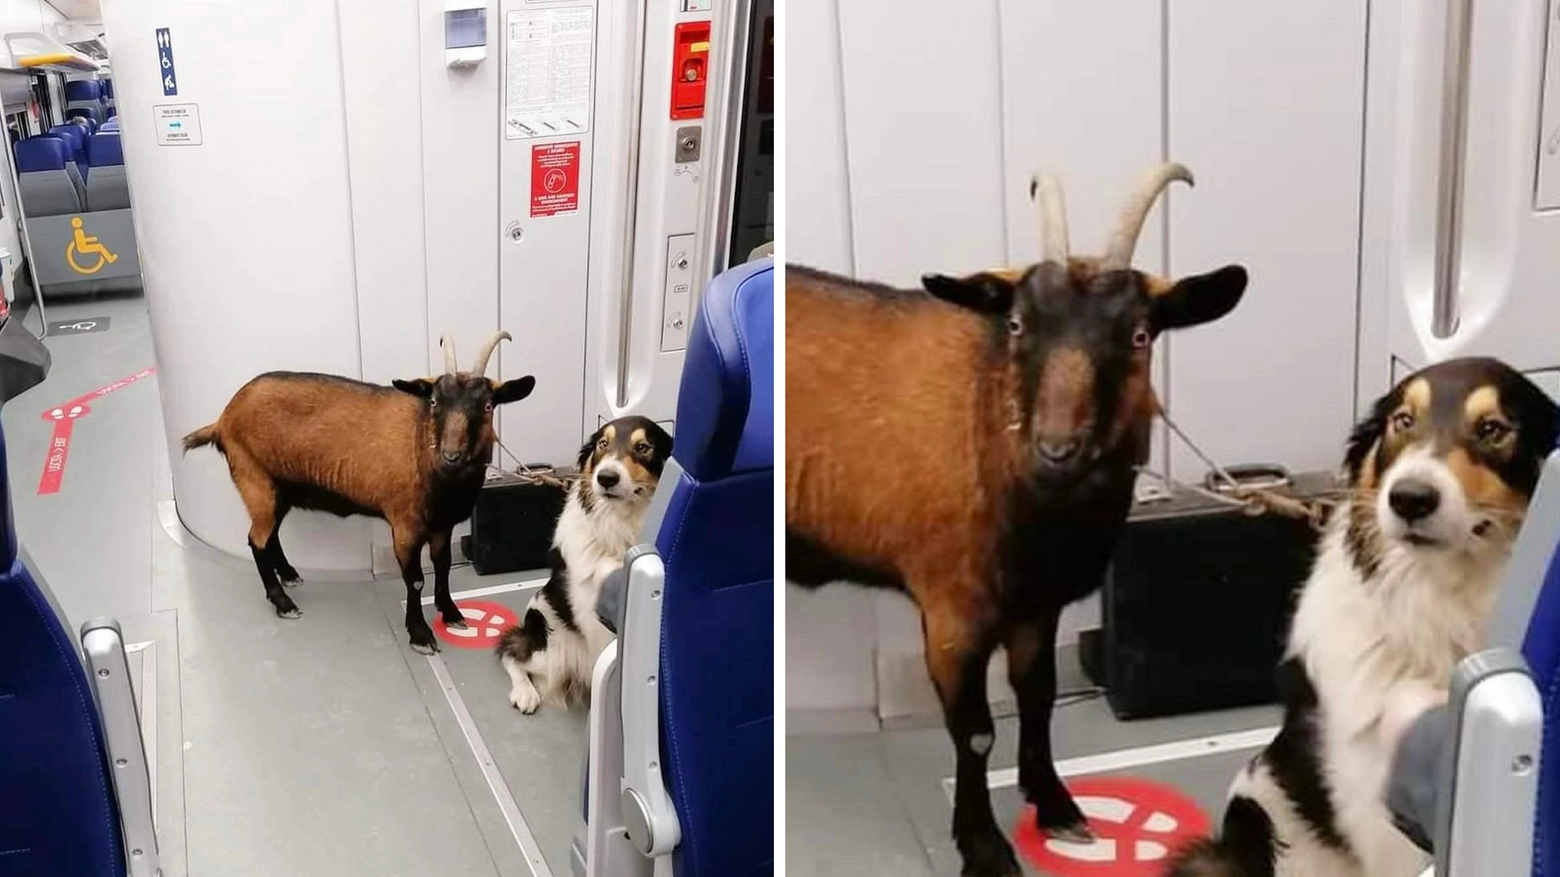 La capra fotografata sul treno